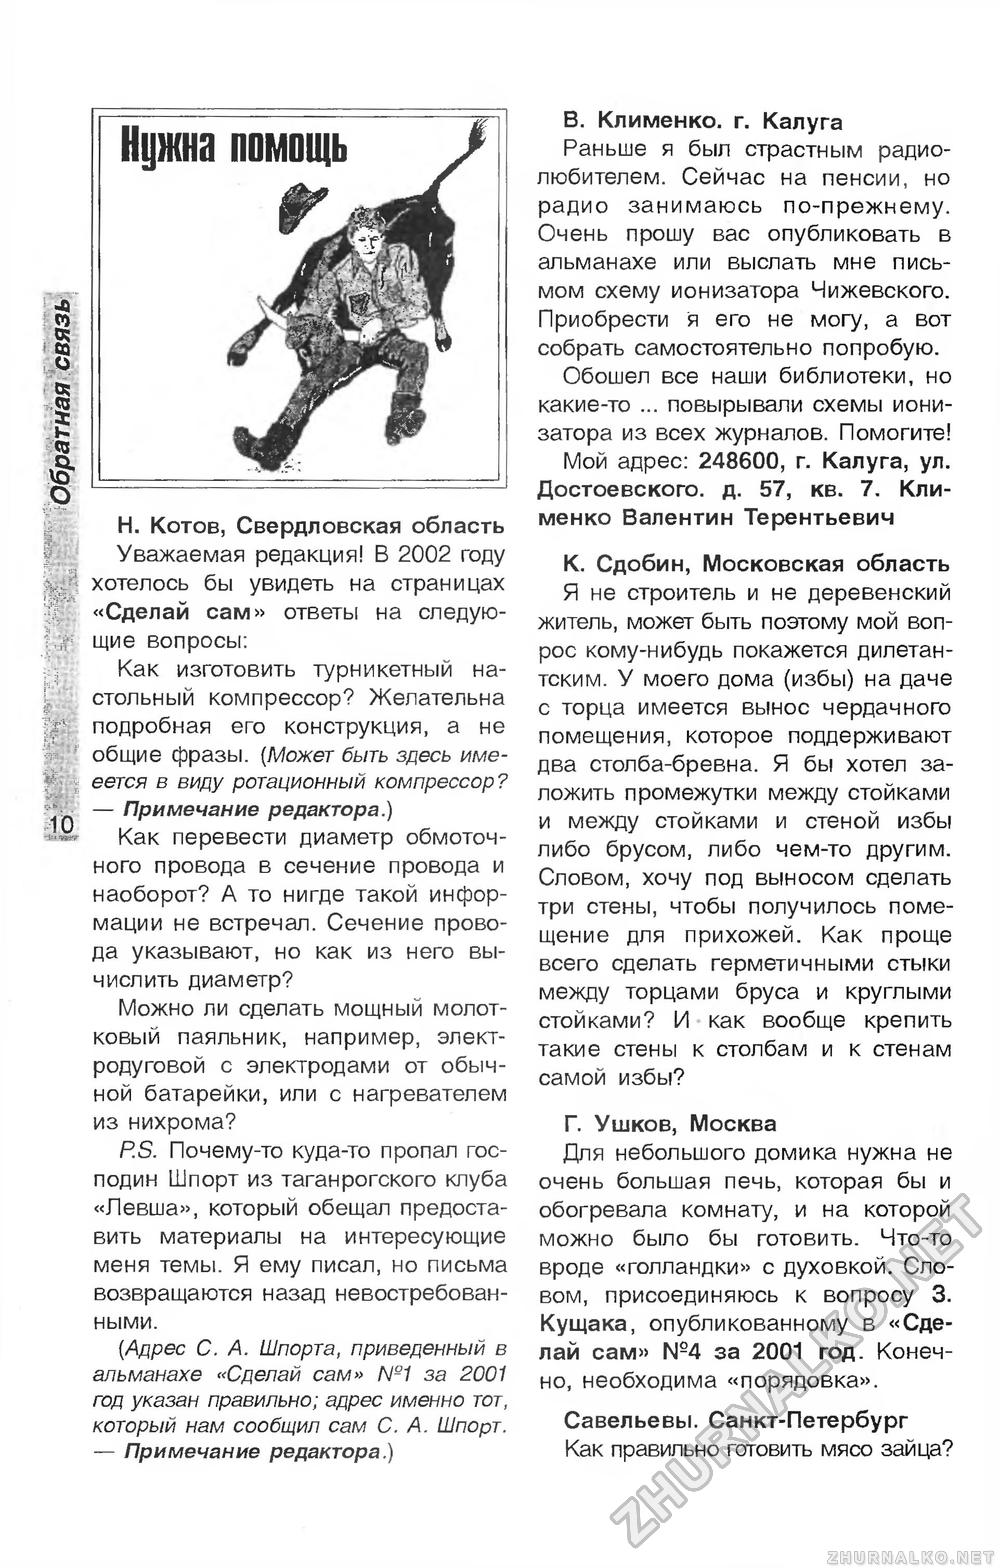 Сделай Сам (Огонек) 2001-06, страница 12